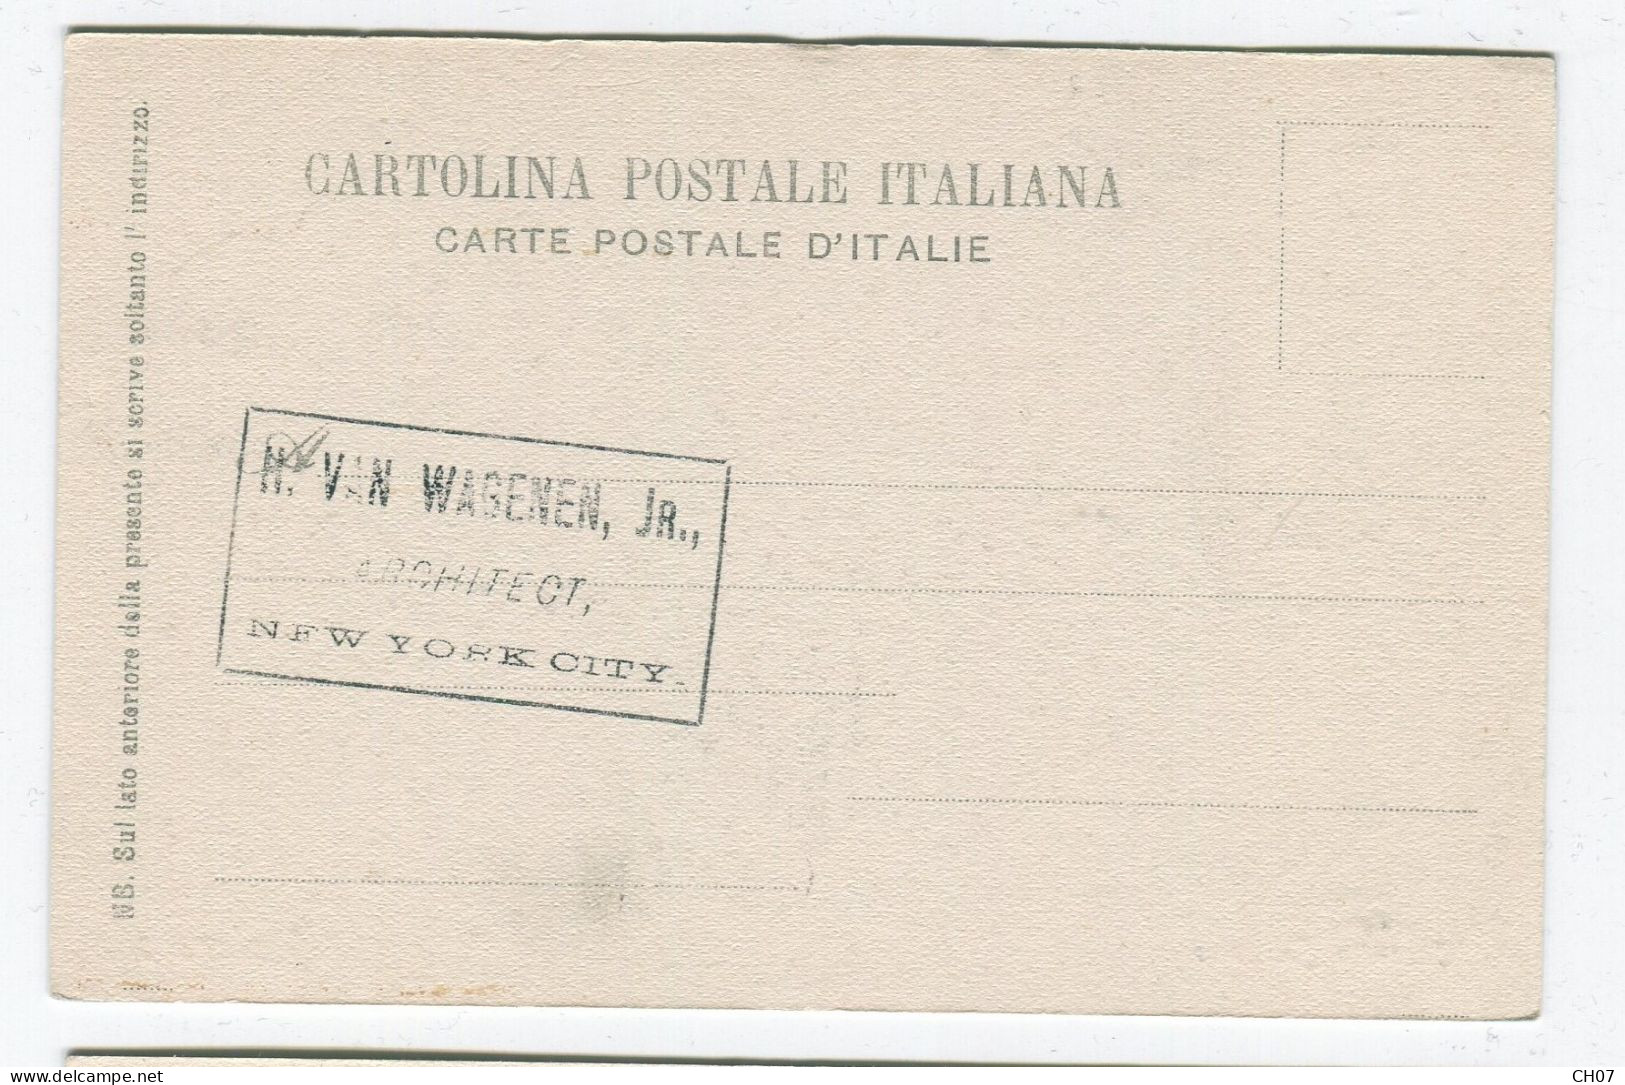 "Lot de 2 Cartes Postales anciennes Italie Palermo,  Carro Siciliano, dos non-divisé